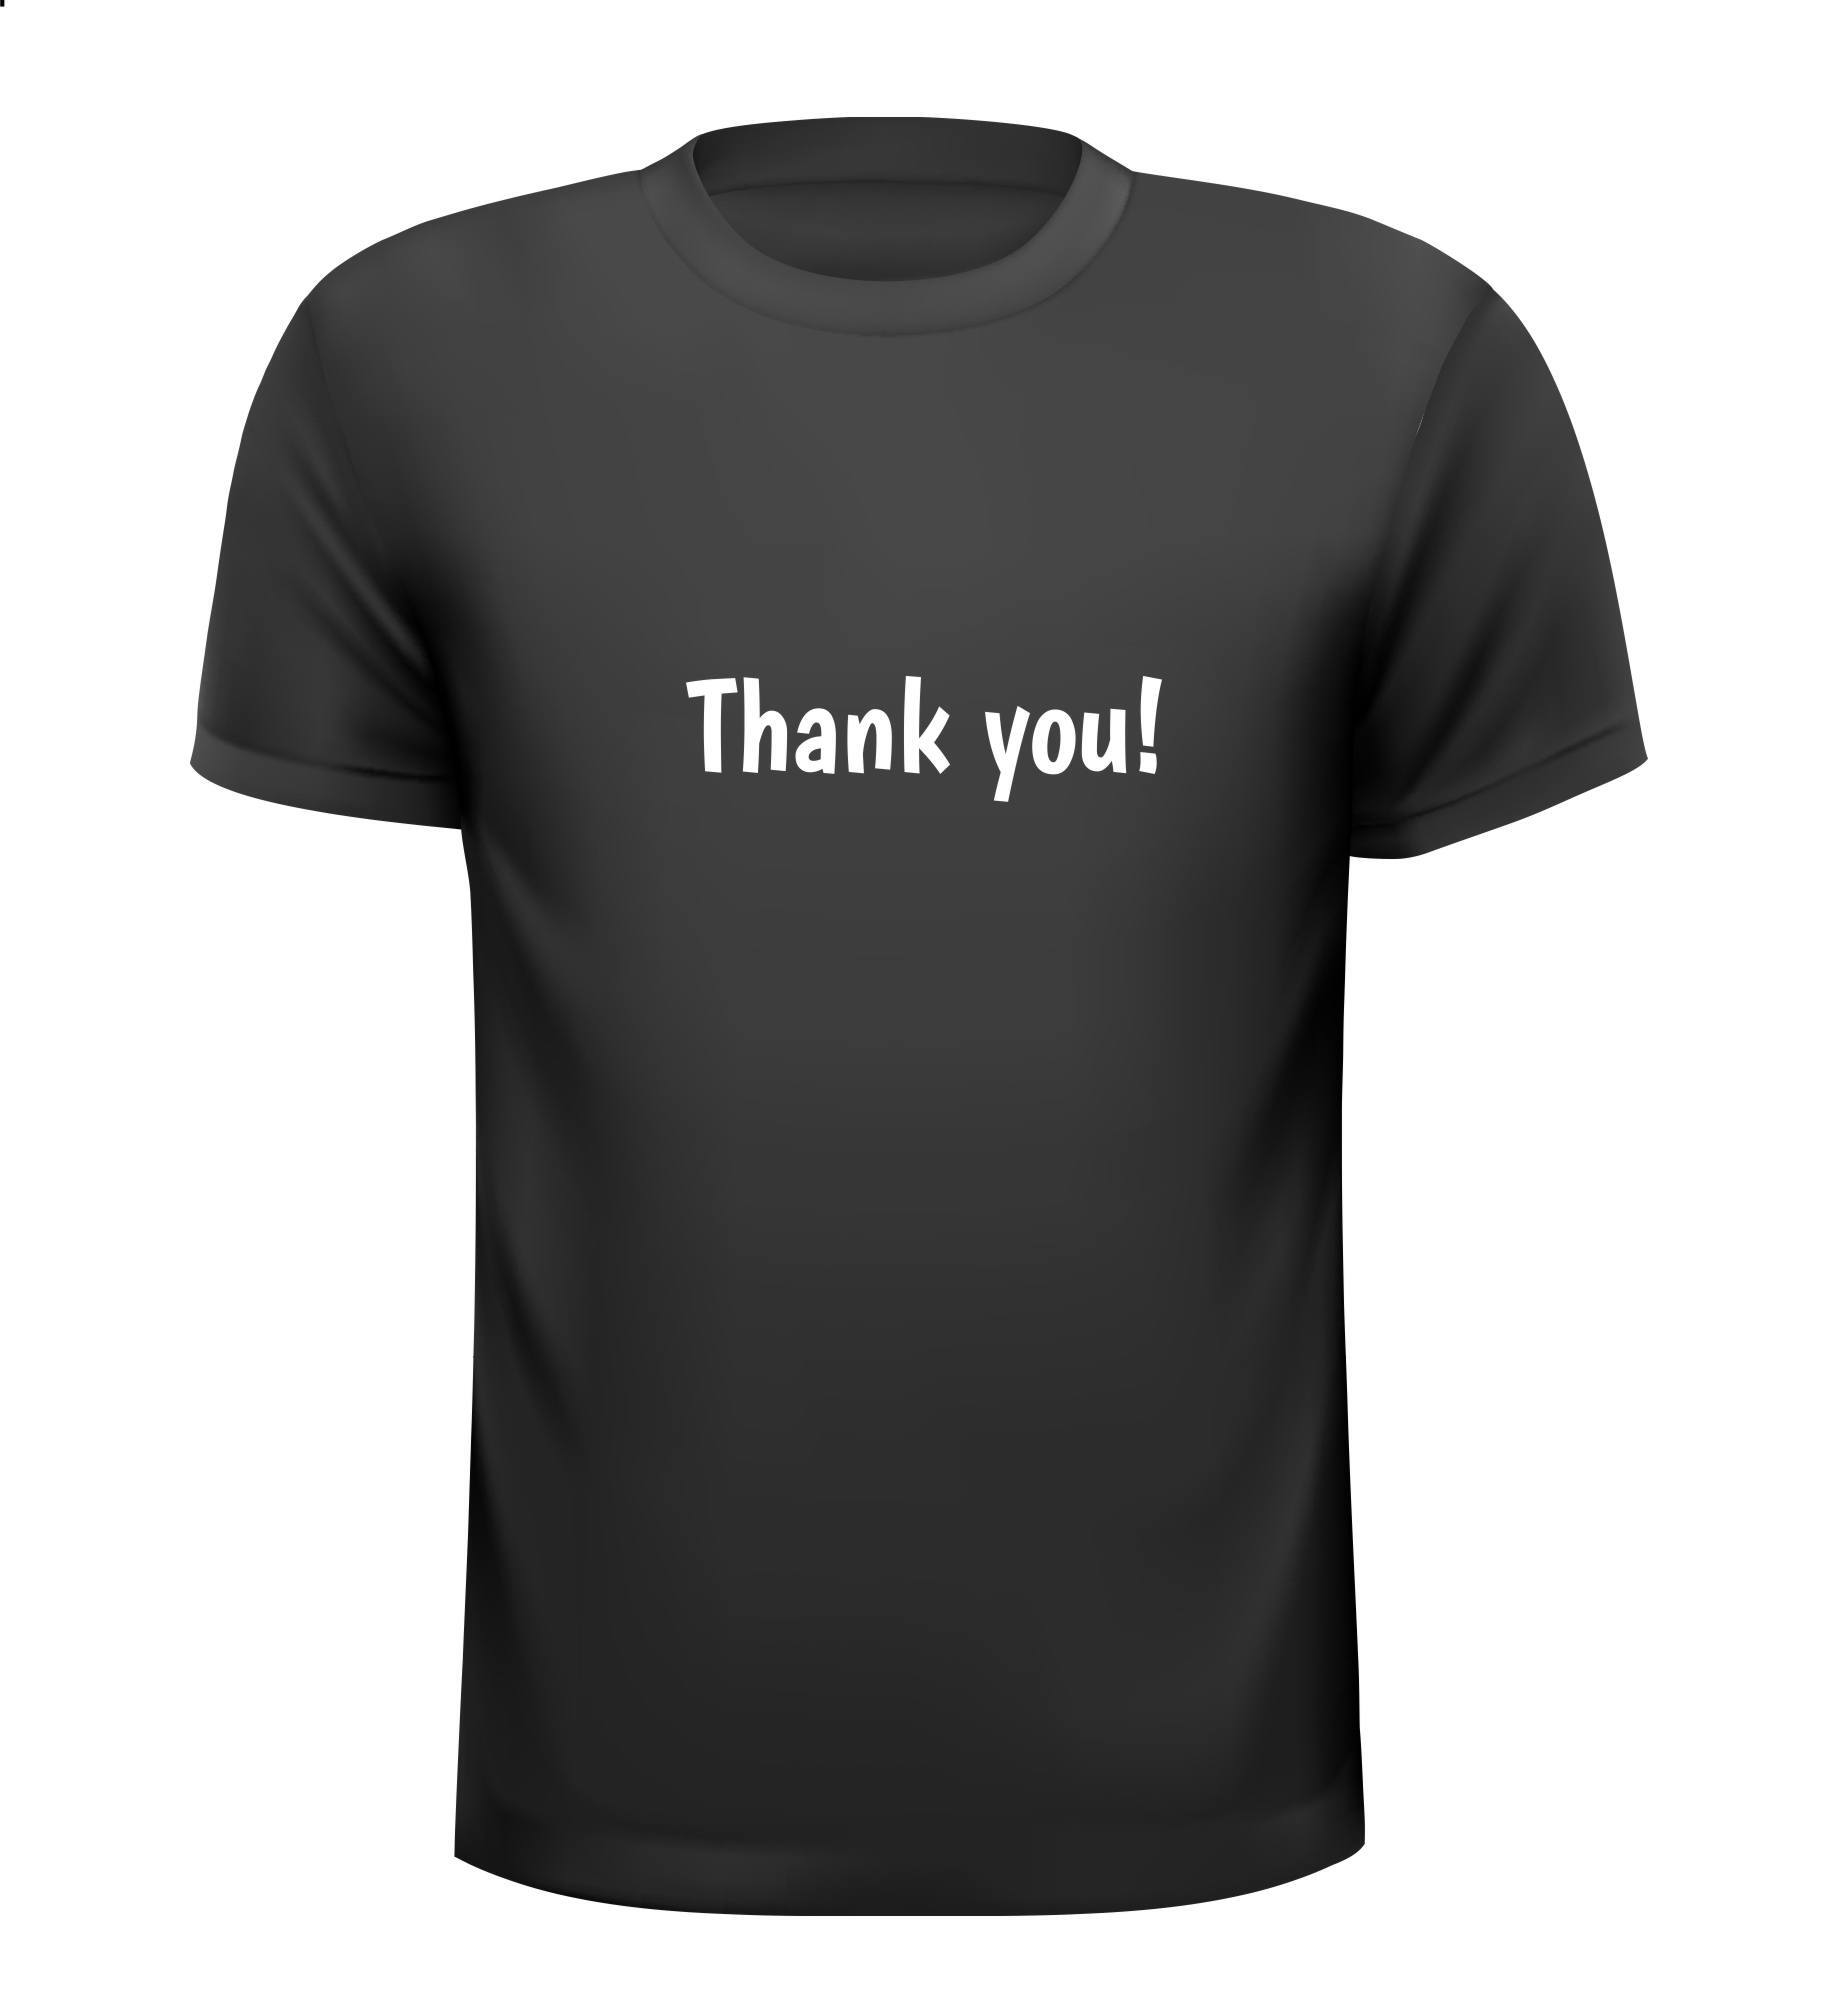 Thank you! T-shirt bedankt